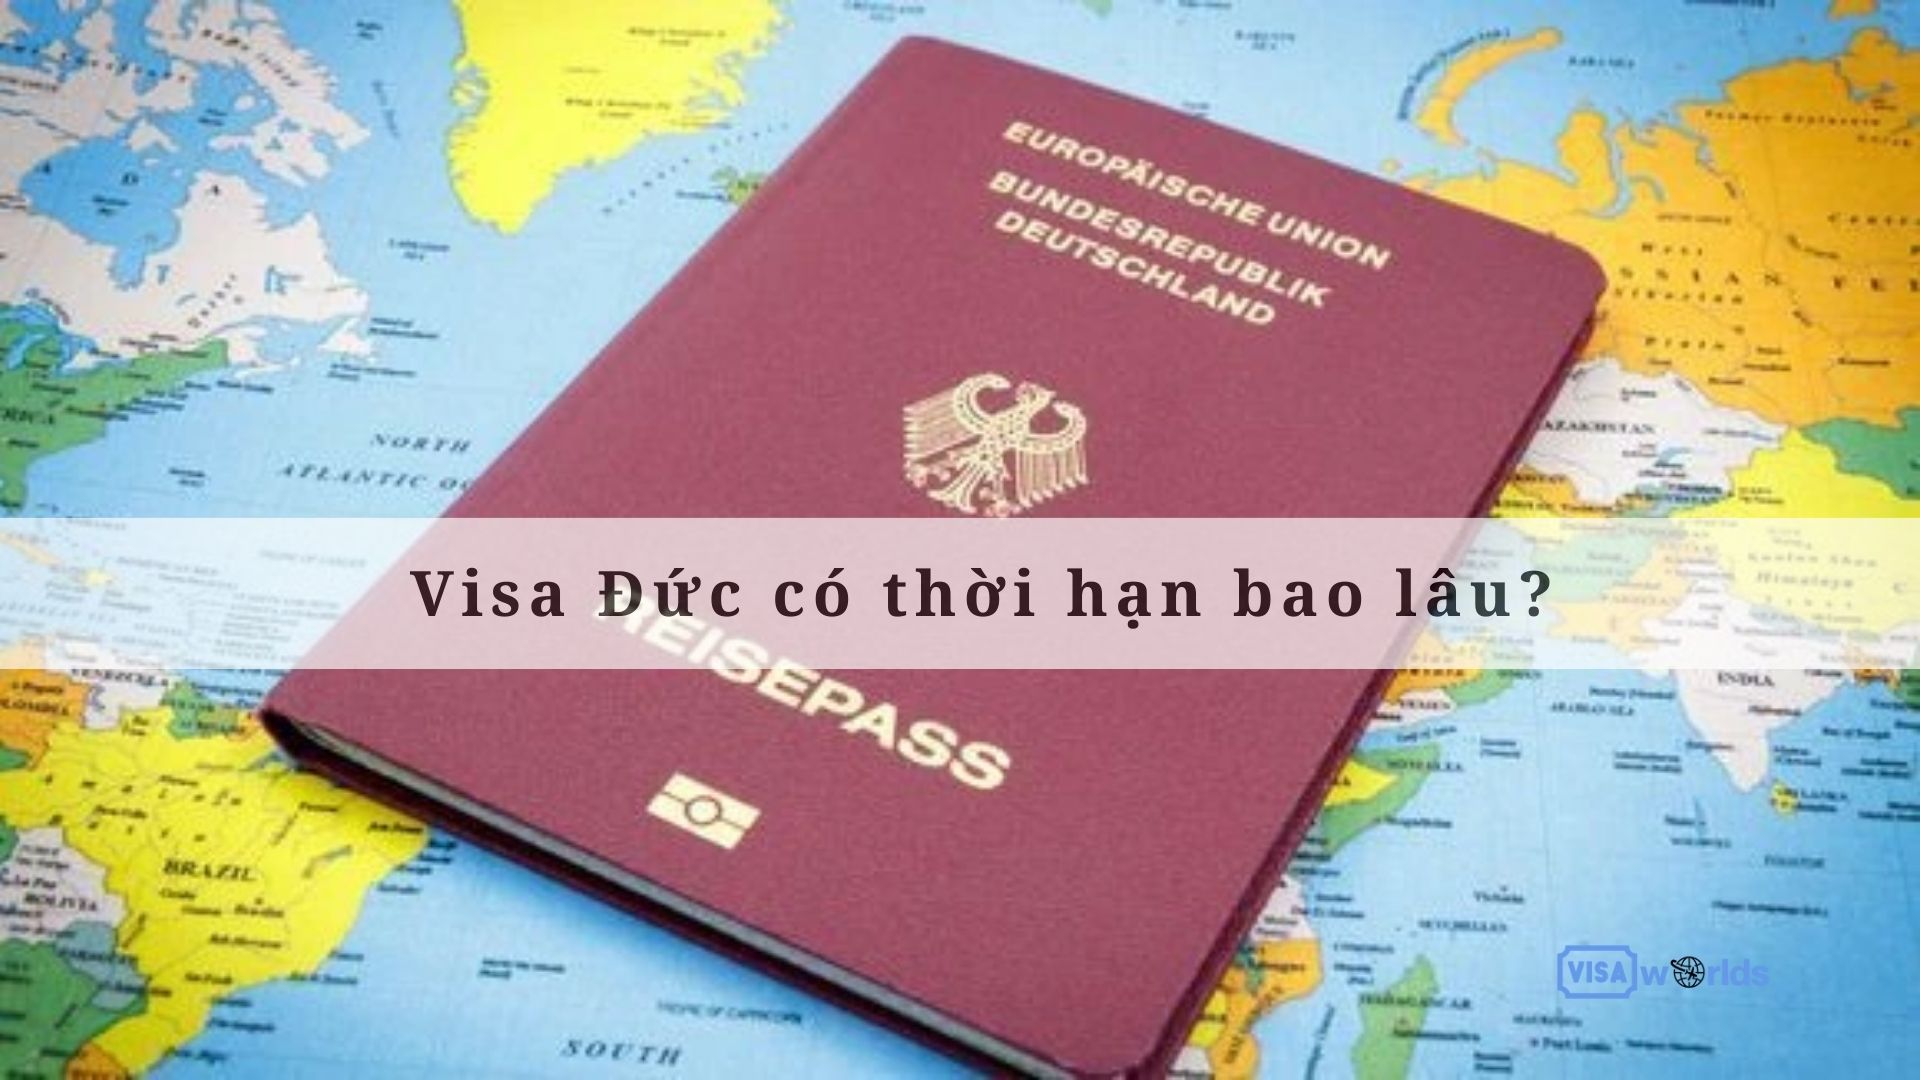 Visa Đức có thời hạn bao lâu?